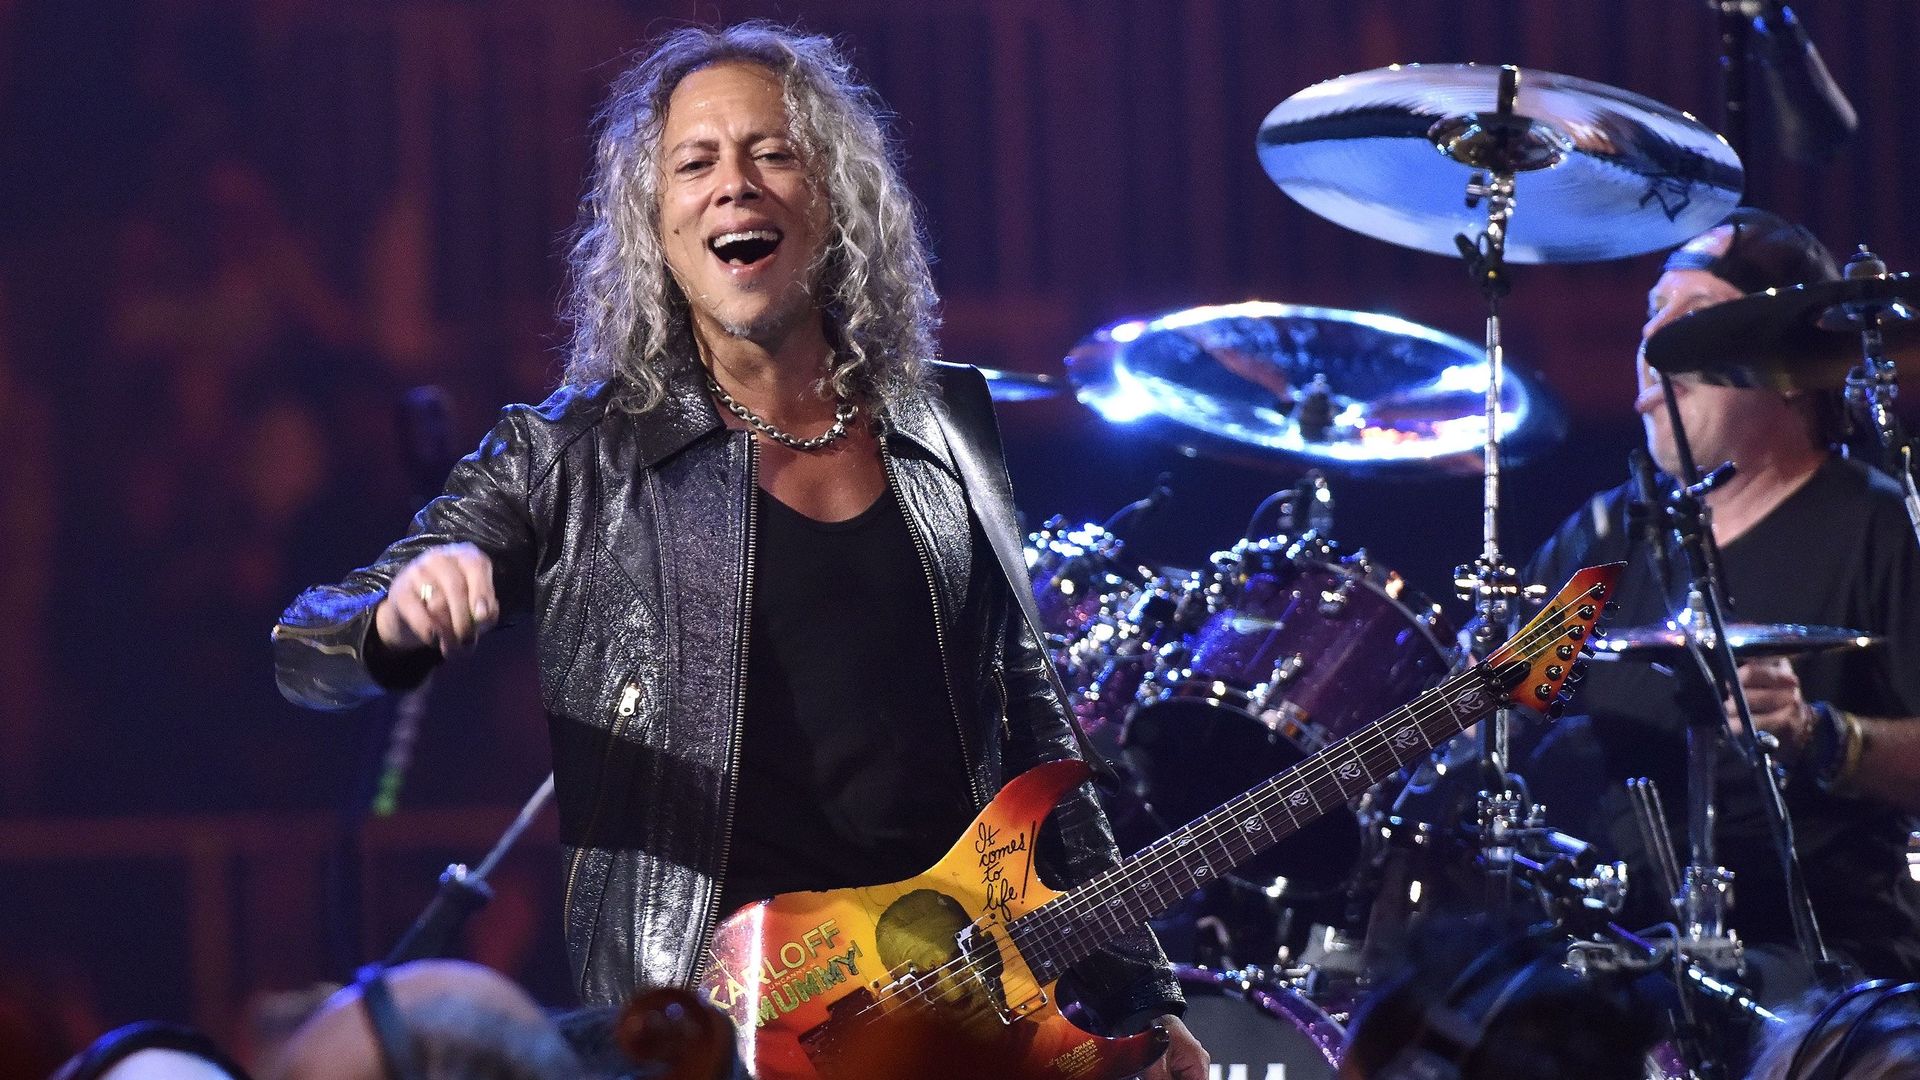 Kirk Hammett et Lars Ulrich de Metallica se produisant lors des concerts "S&M2" à la soirée d’ouverture au Chase Center à San Francisco le 6 septembre 2019.